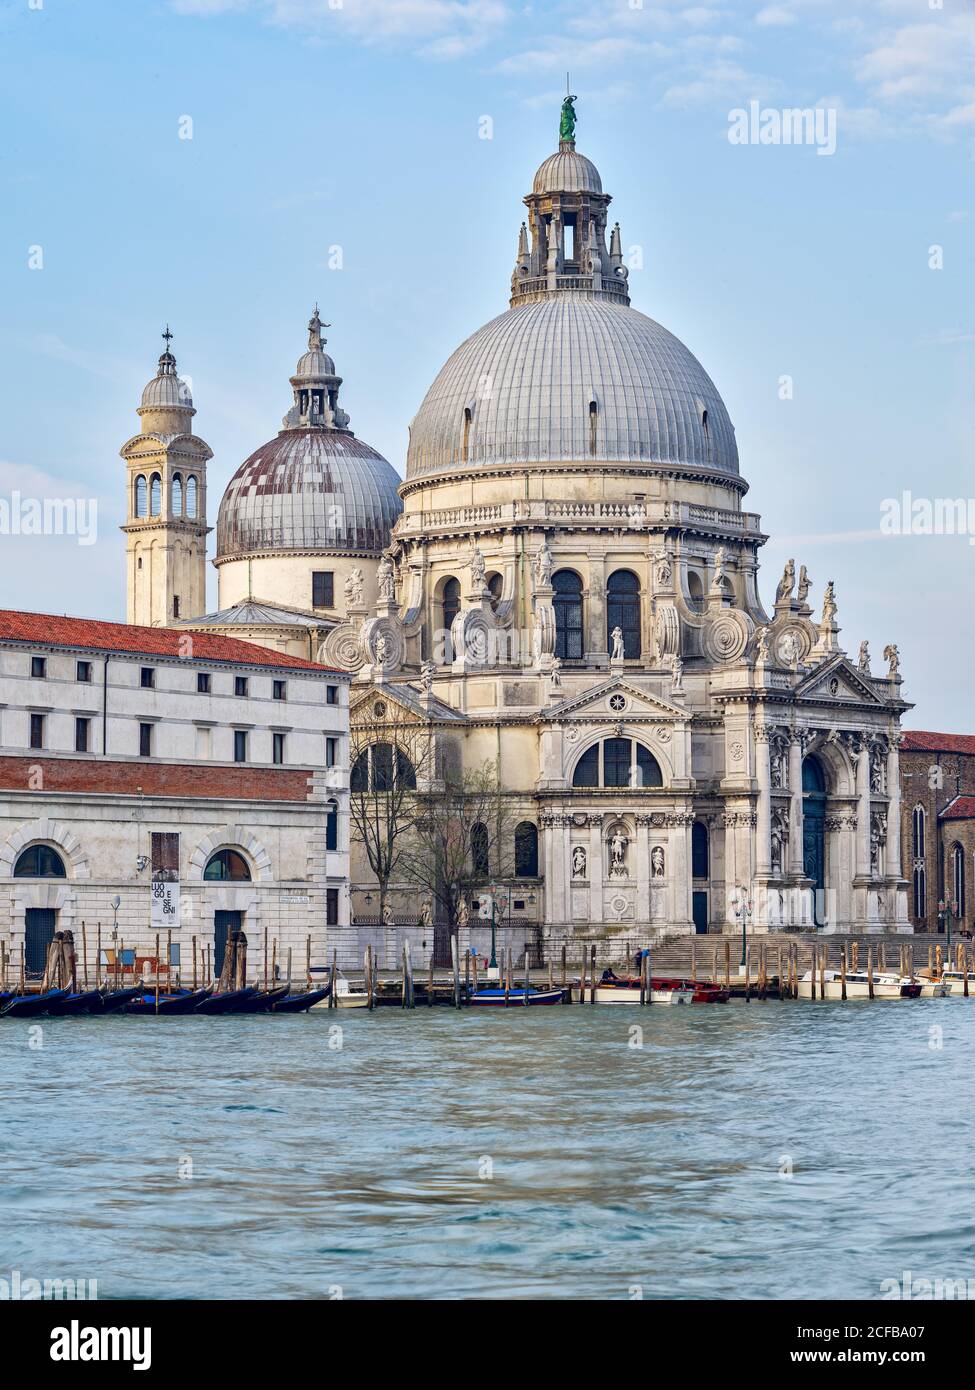 Plaza de San Marcos (Piazza San Marco), Santa Maria della Salute, Basílica di Santa Maria della Salute, Venecia (Venecia, Venecia), Véneto, Italia, Foto de stock